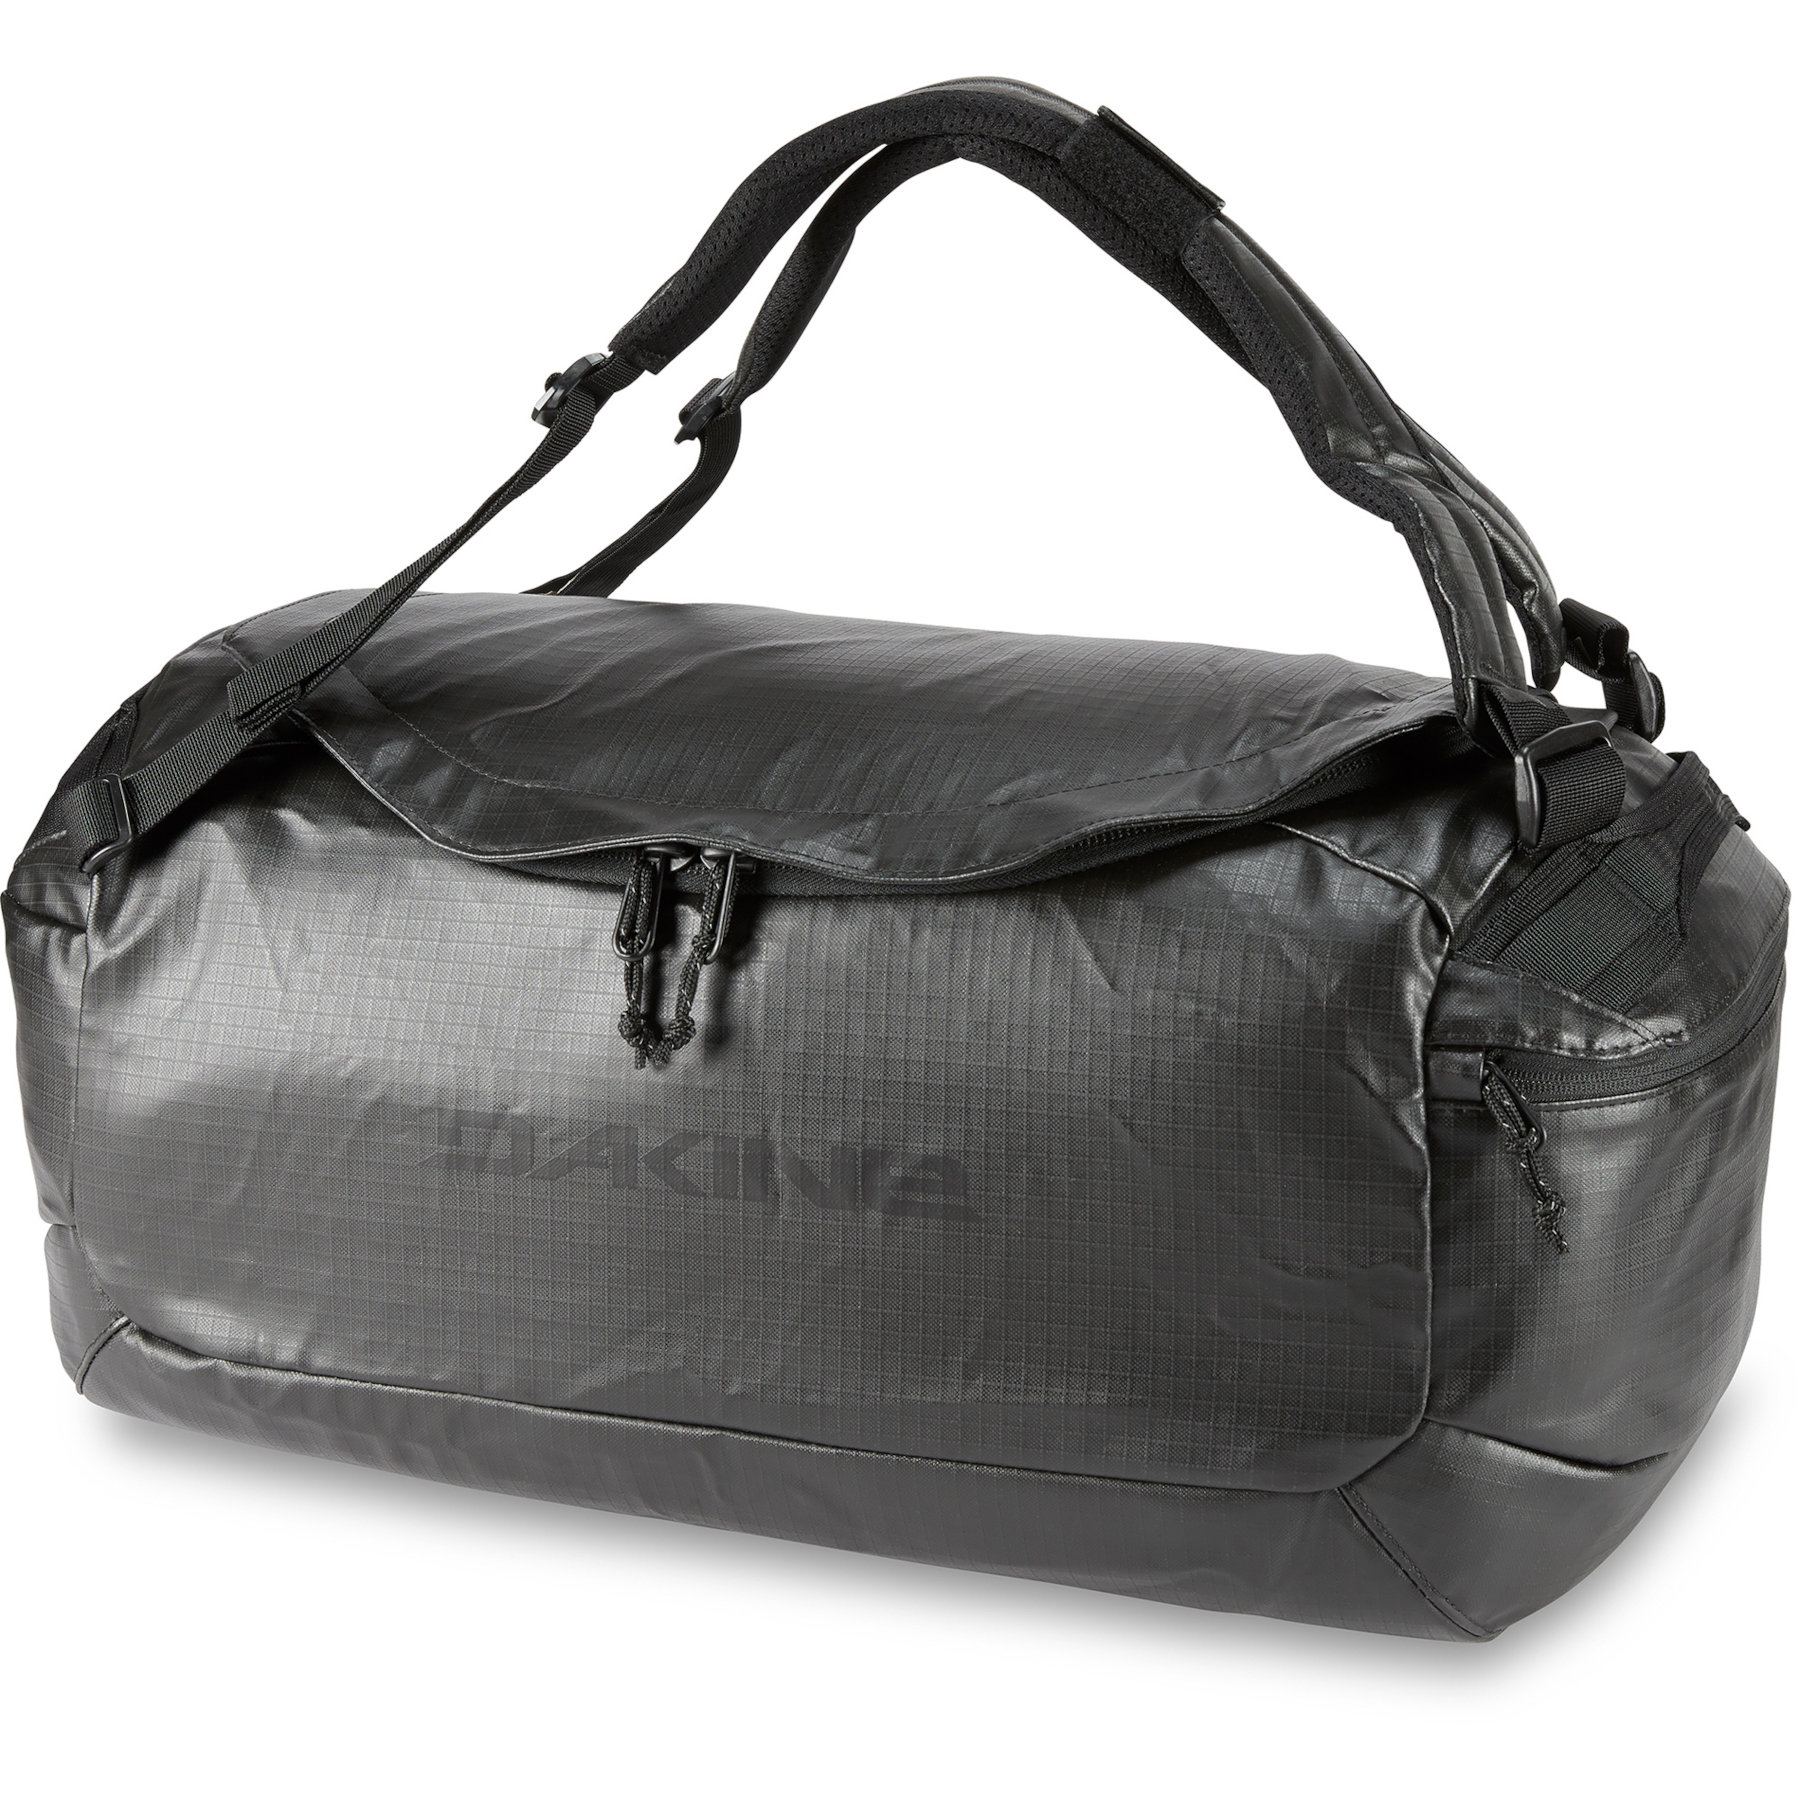 Produktbild von Dakine Ranger Duffle 60L Reisetasche - schwarz